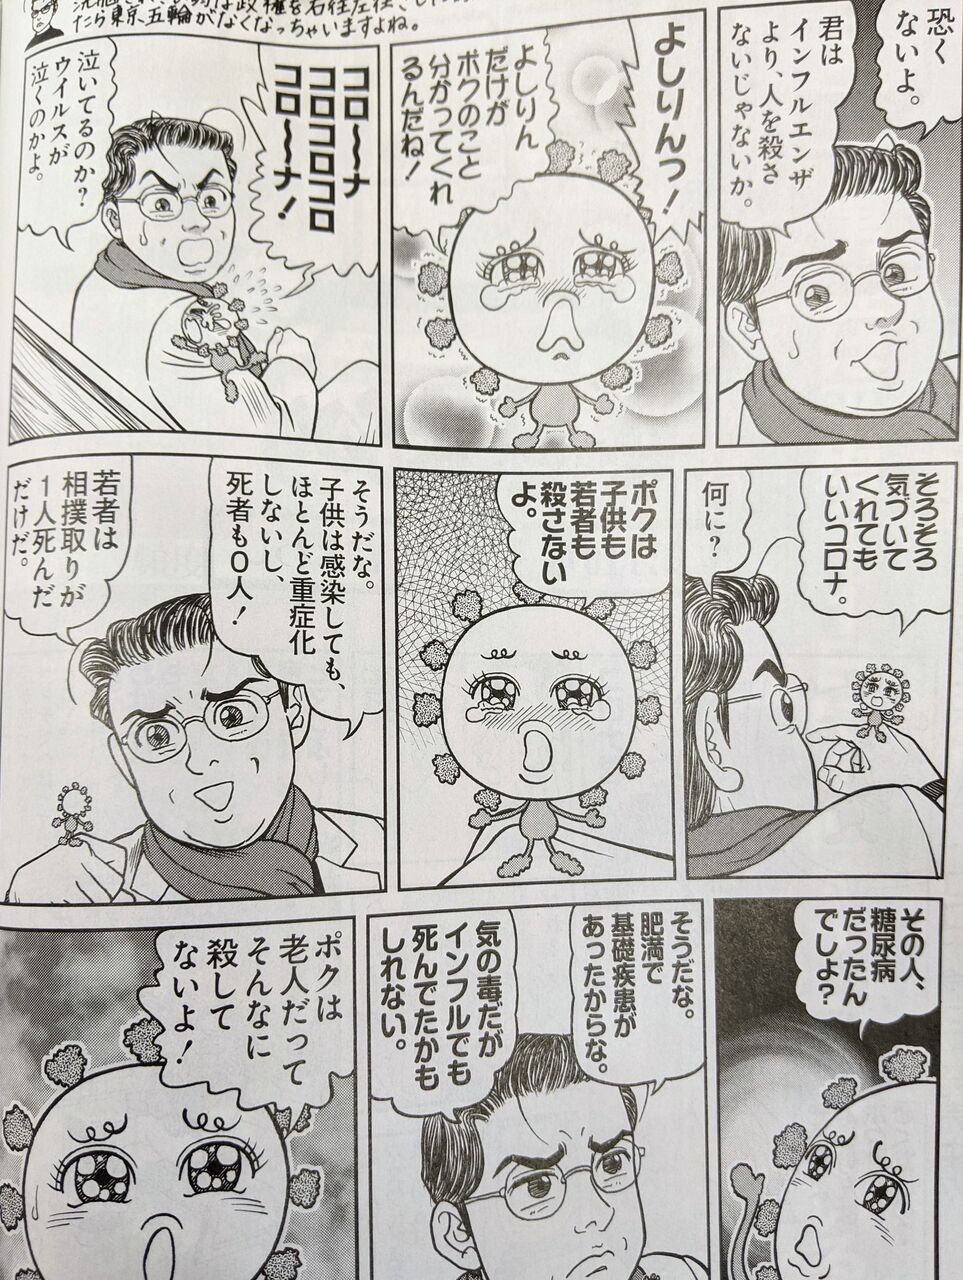 悲報 漫画家の小林よしのり先生 独特の観点を披露した コロナ論 のせいで完全に嫌われてしまう 同人速報